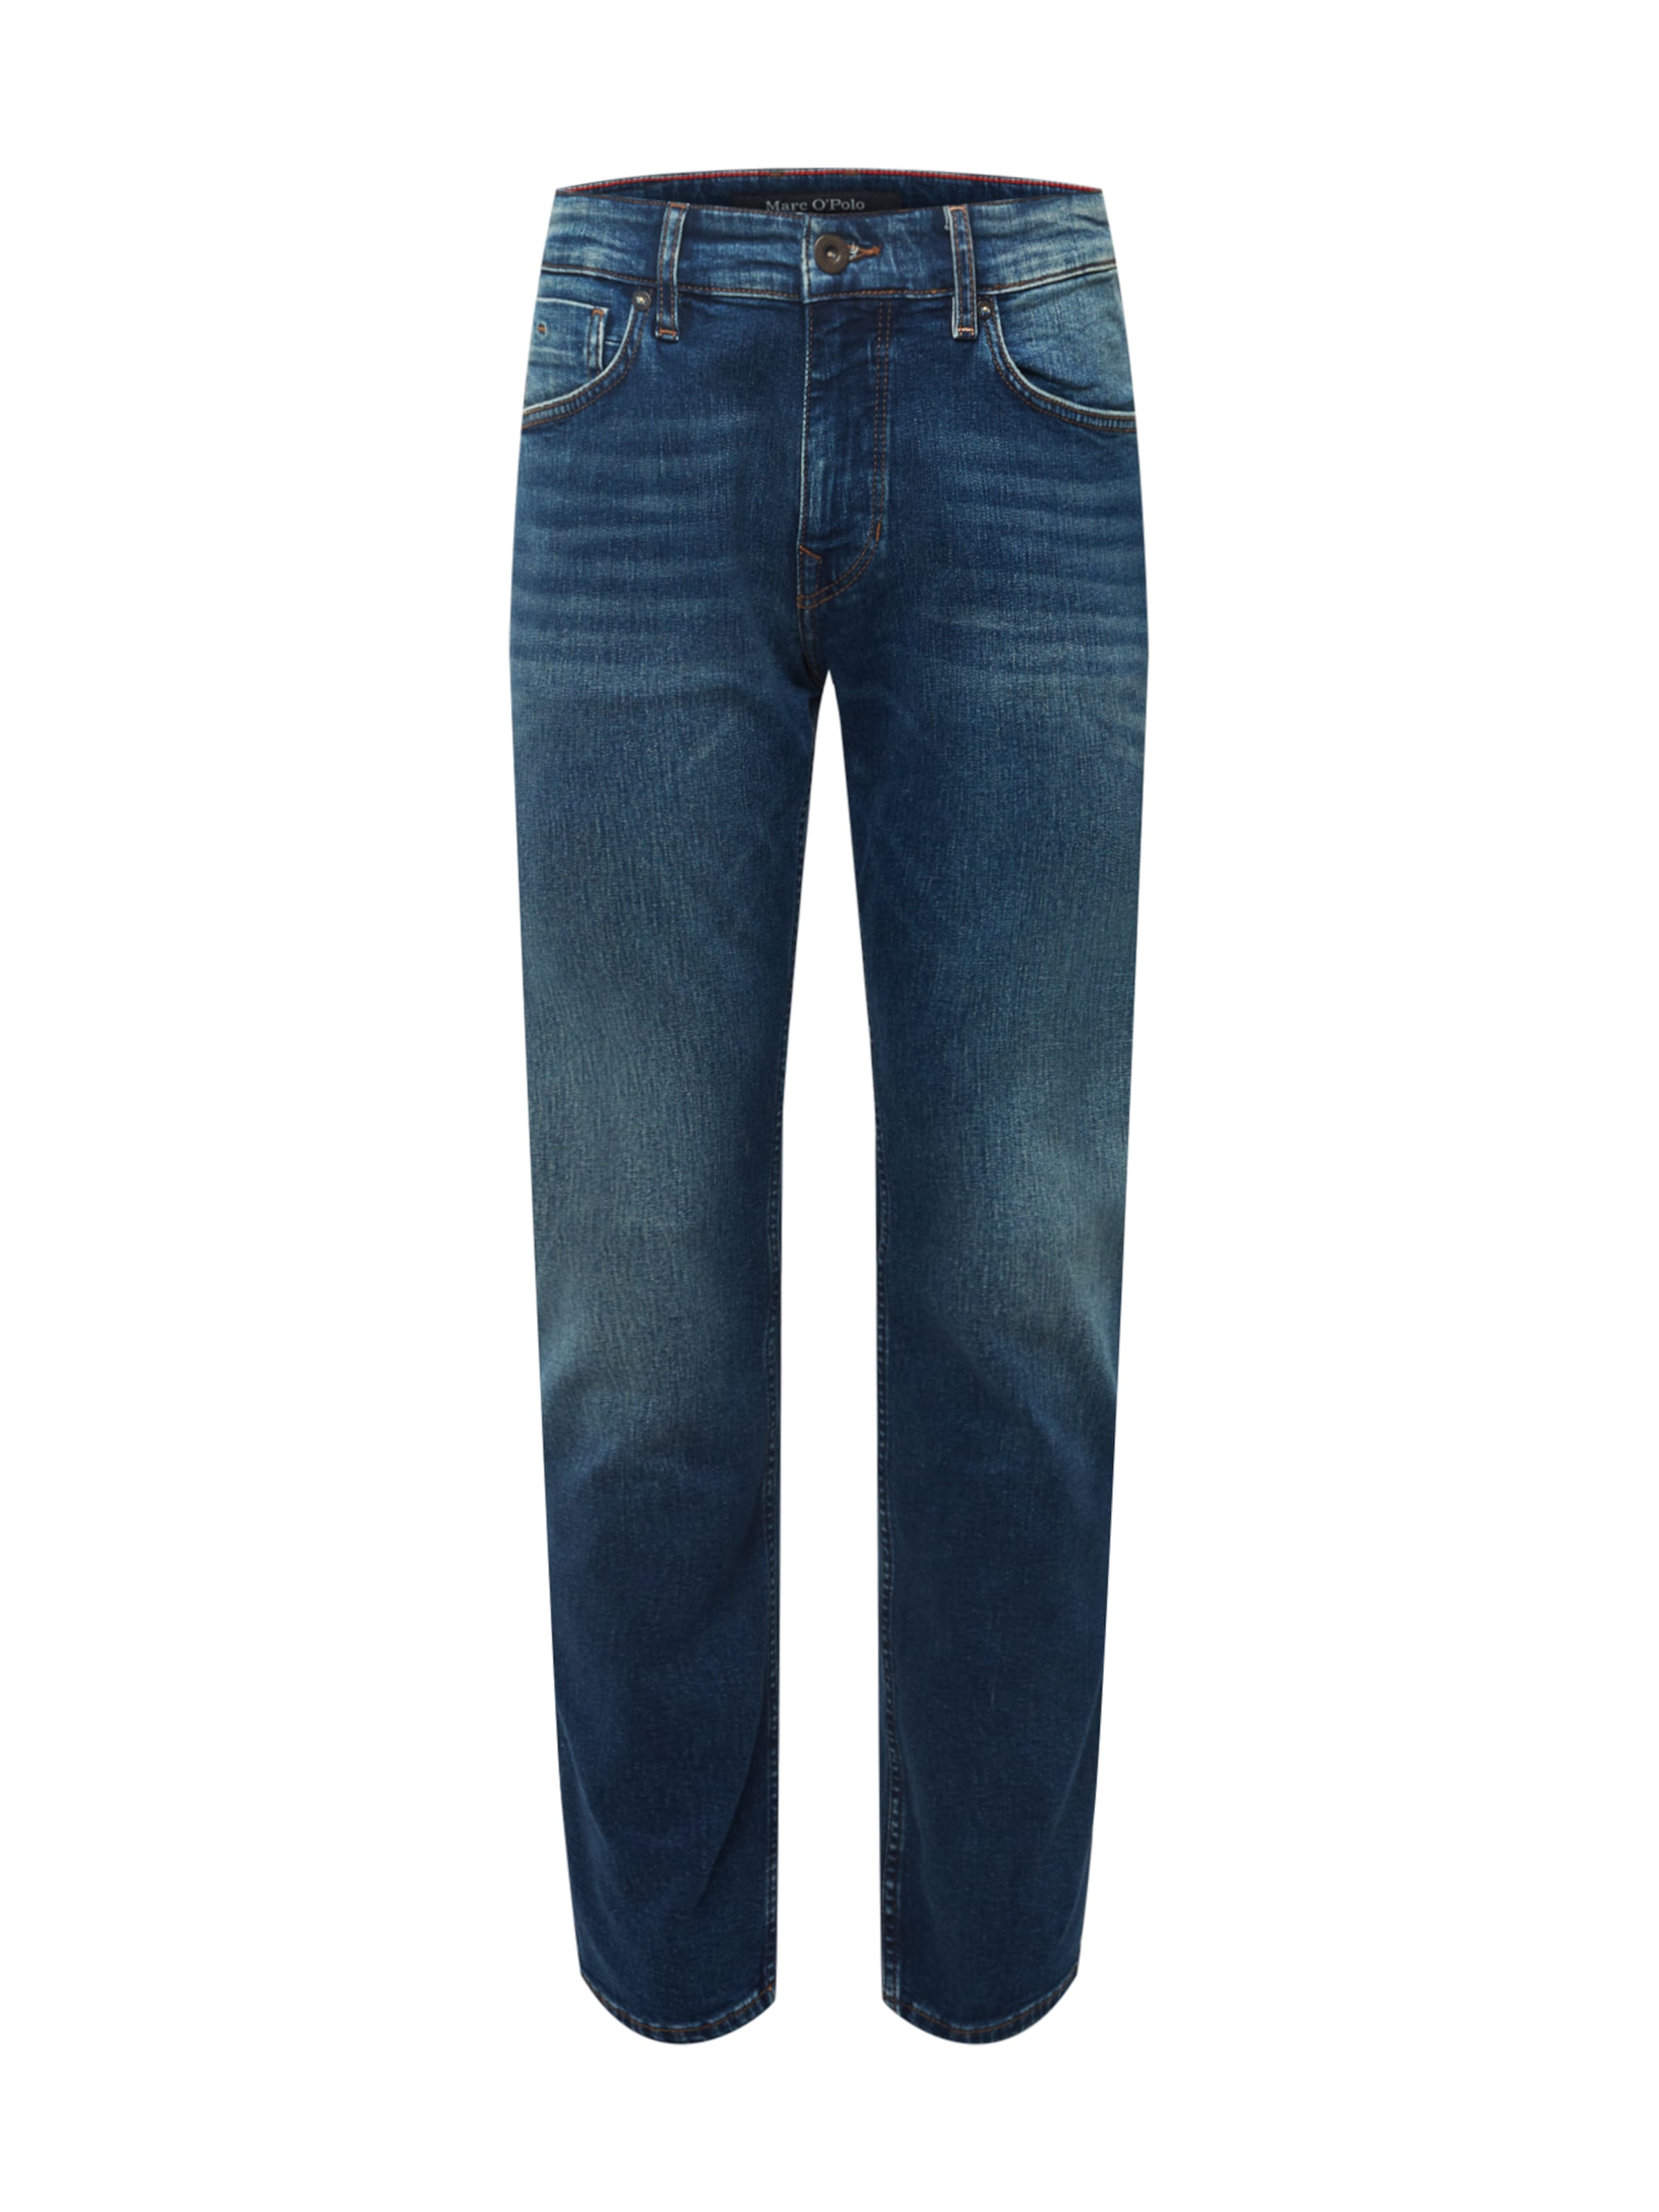 Abbigliamento Uomo Marc OPolo Jeans Kemi in Blu 